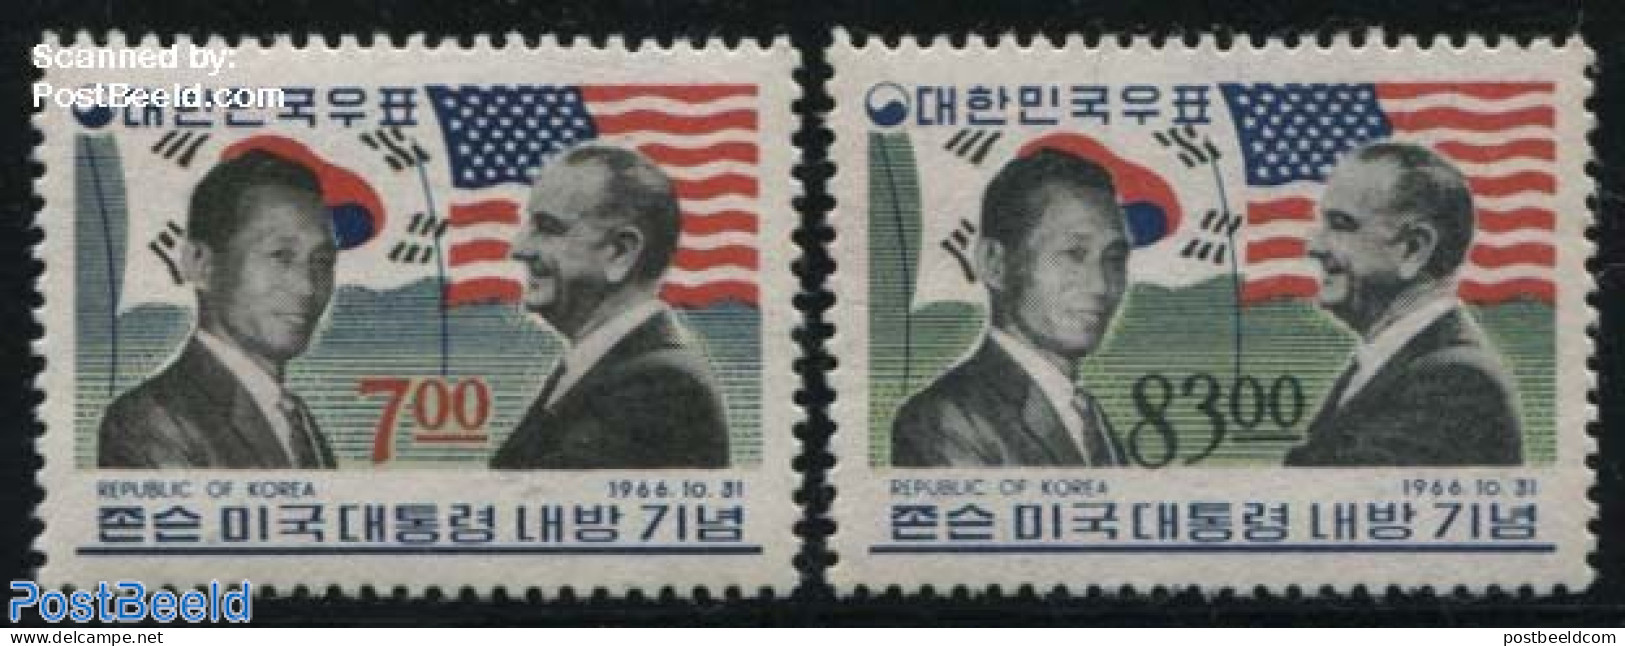 Korea, South 1966 Johnson Visit 2v, Mint NH, History - American Presidents - Flags - Politicians - Korea, South